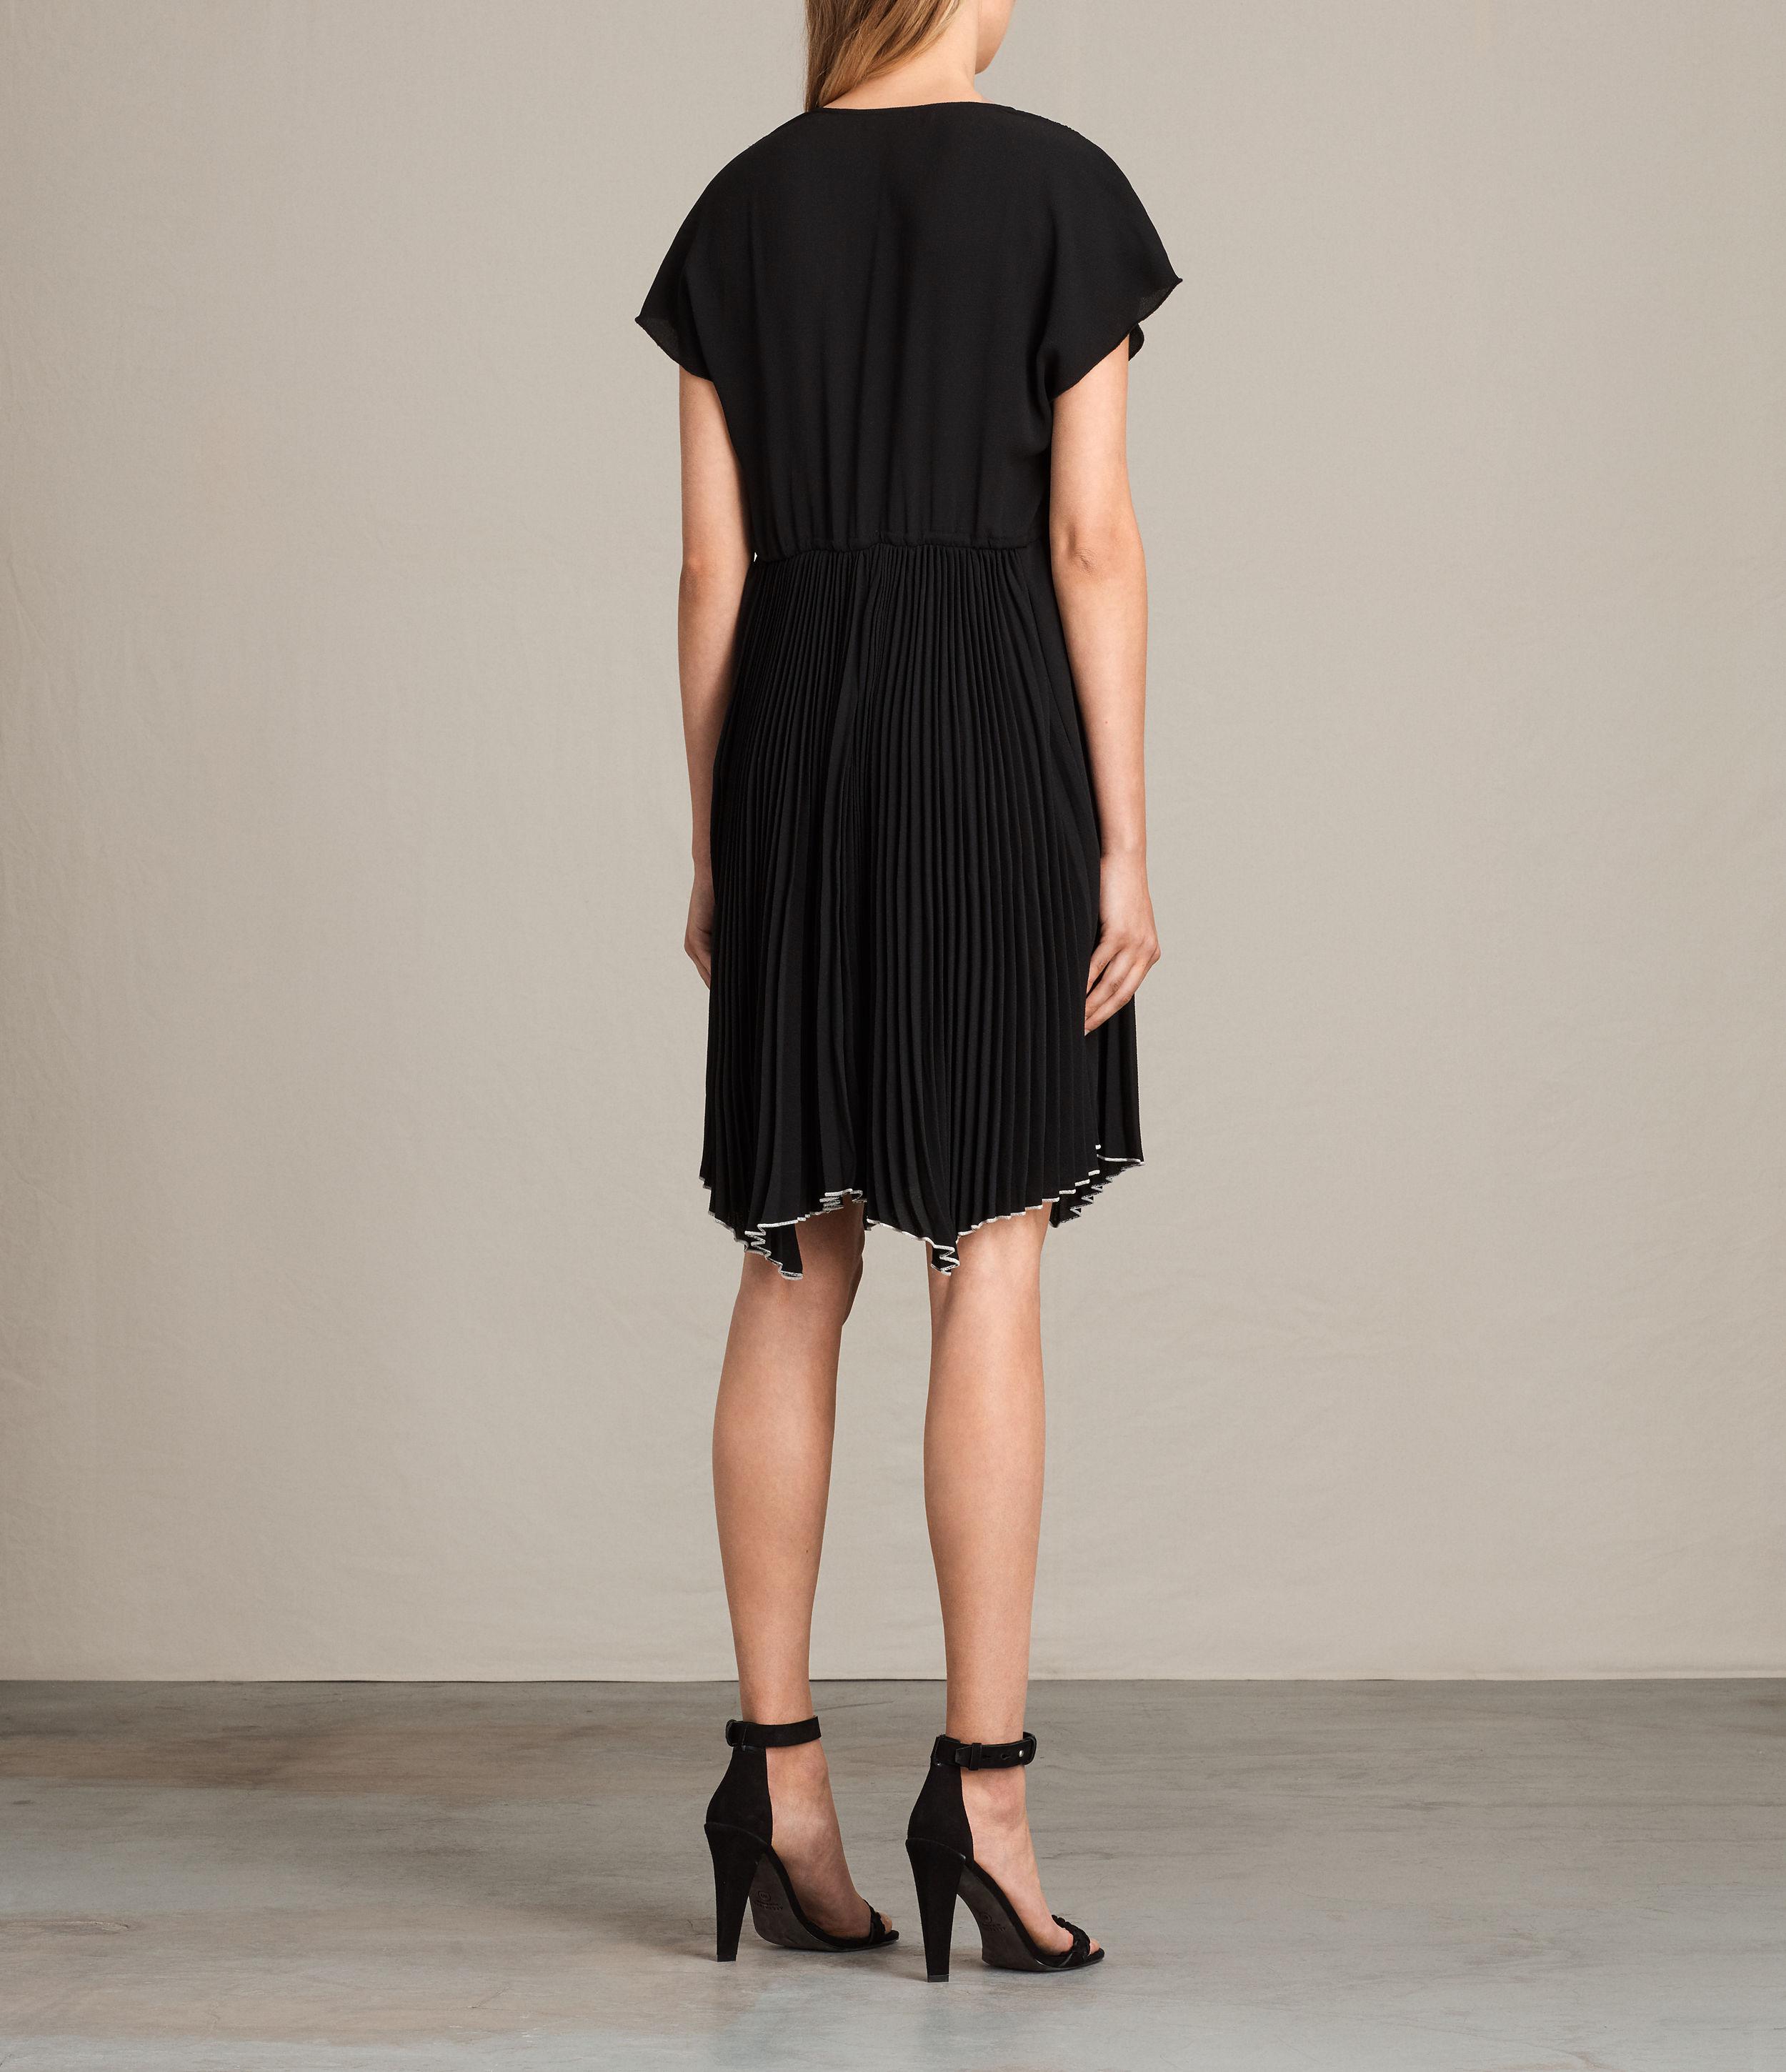 AllSaints Synthetic Myer Dress in Black - Lyst